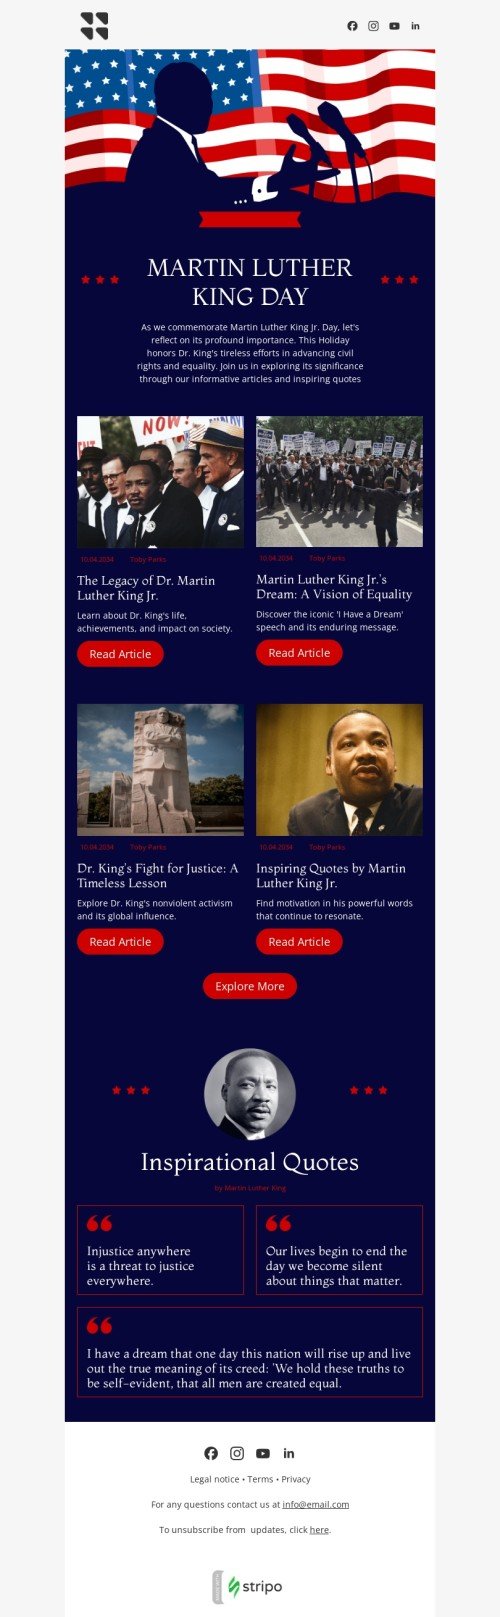 Plantilla de correo electrónico «Descubre el significado» de Día de Martin Luther King Jr. para la industria de publicaciones y blogs Vista de móvil